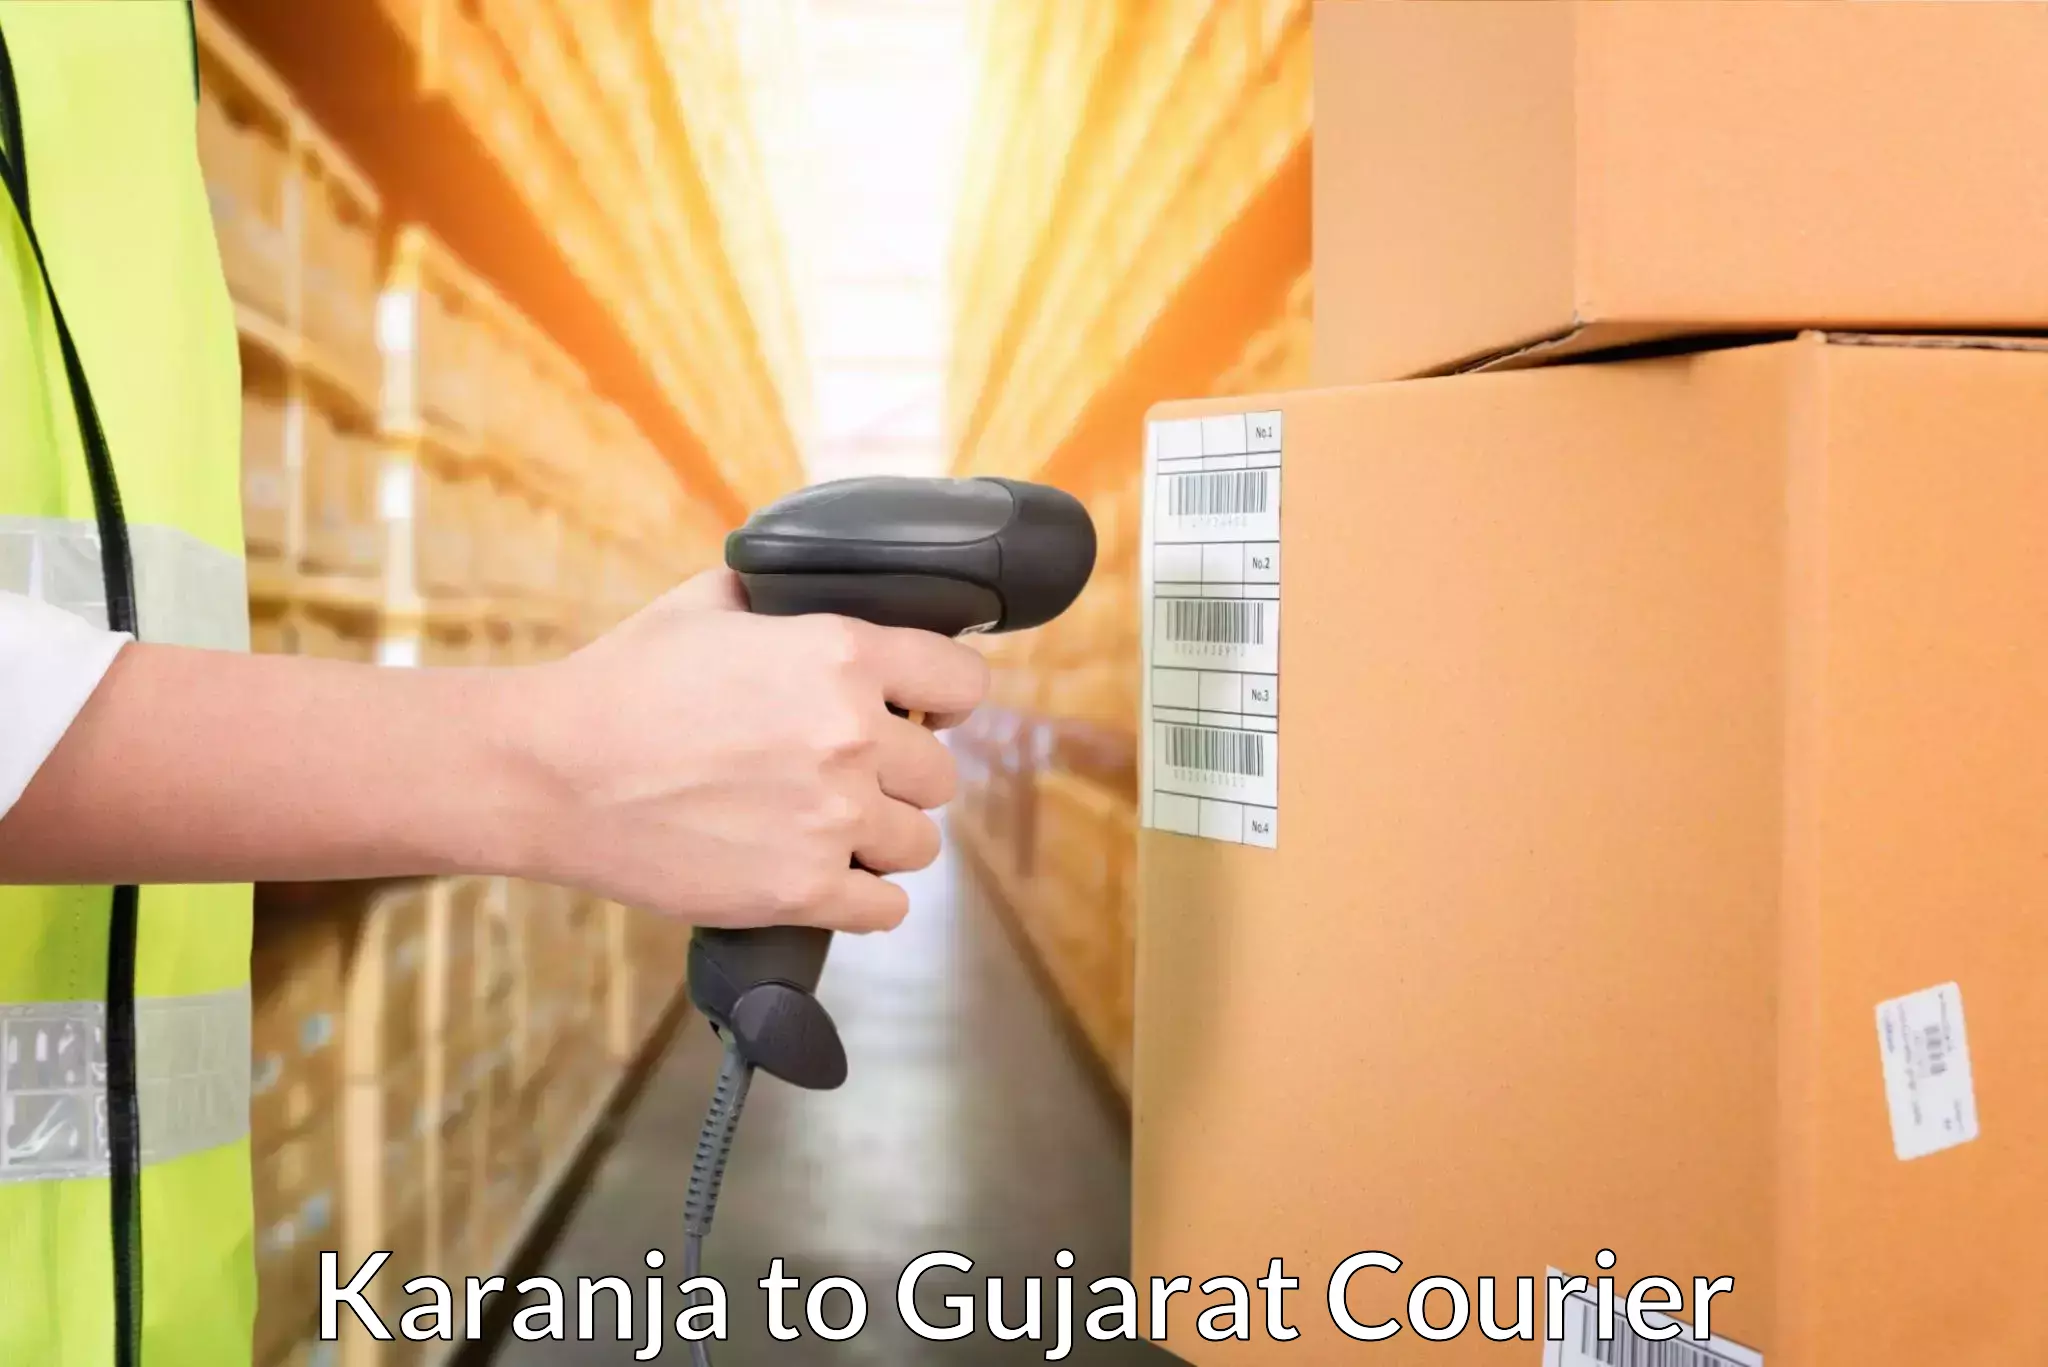 Small parcel delivery in Karanja to Navrangpura